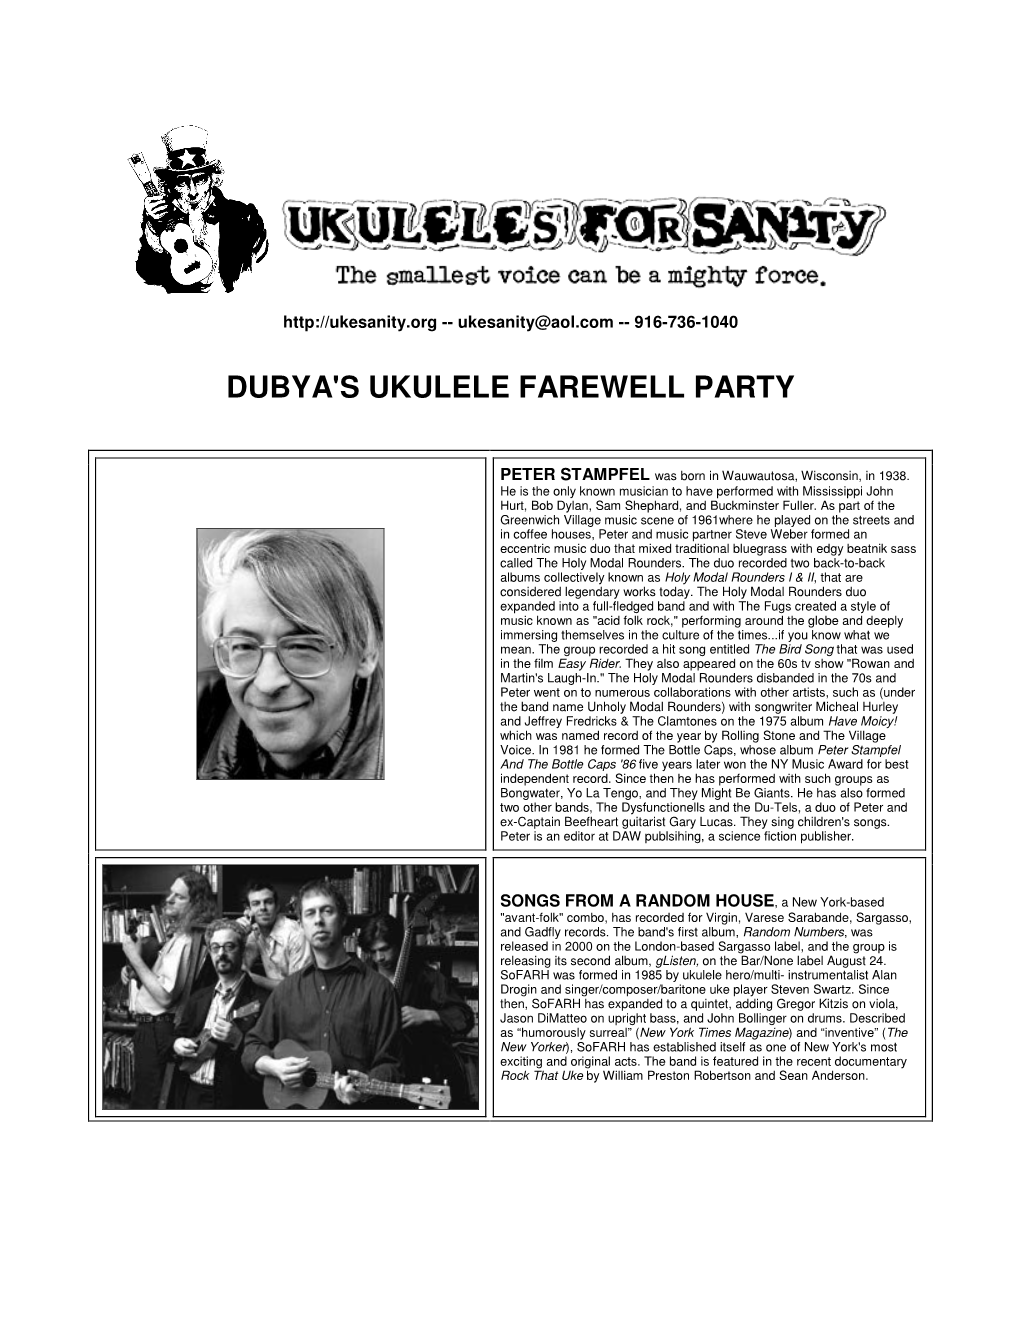 Dubya's Ukulele Farewell Party